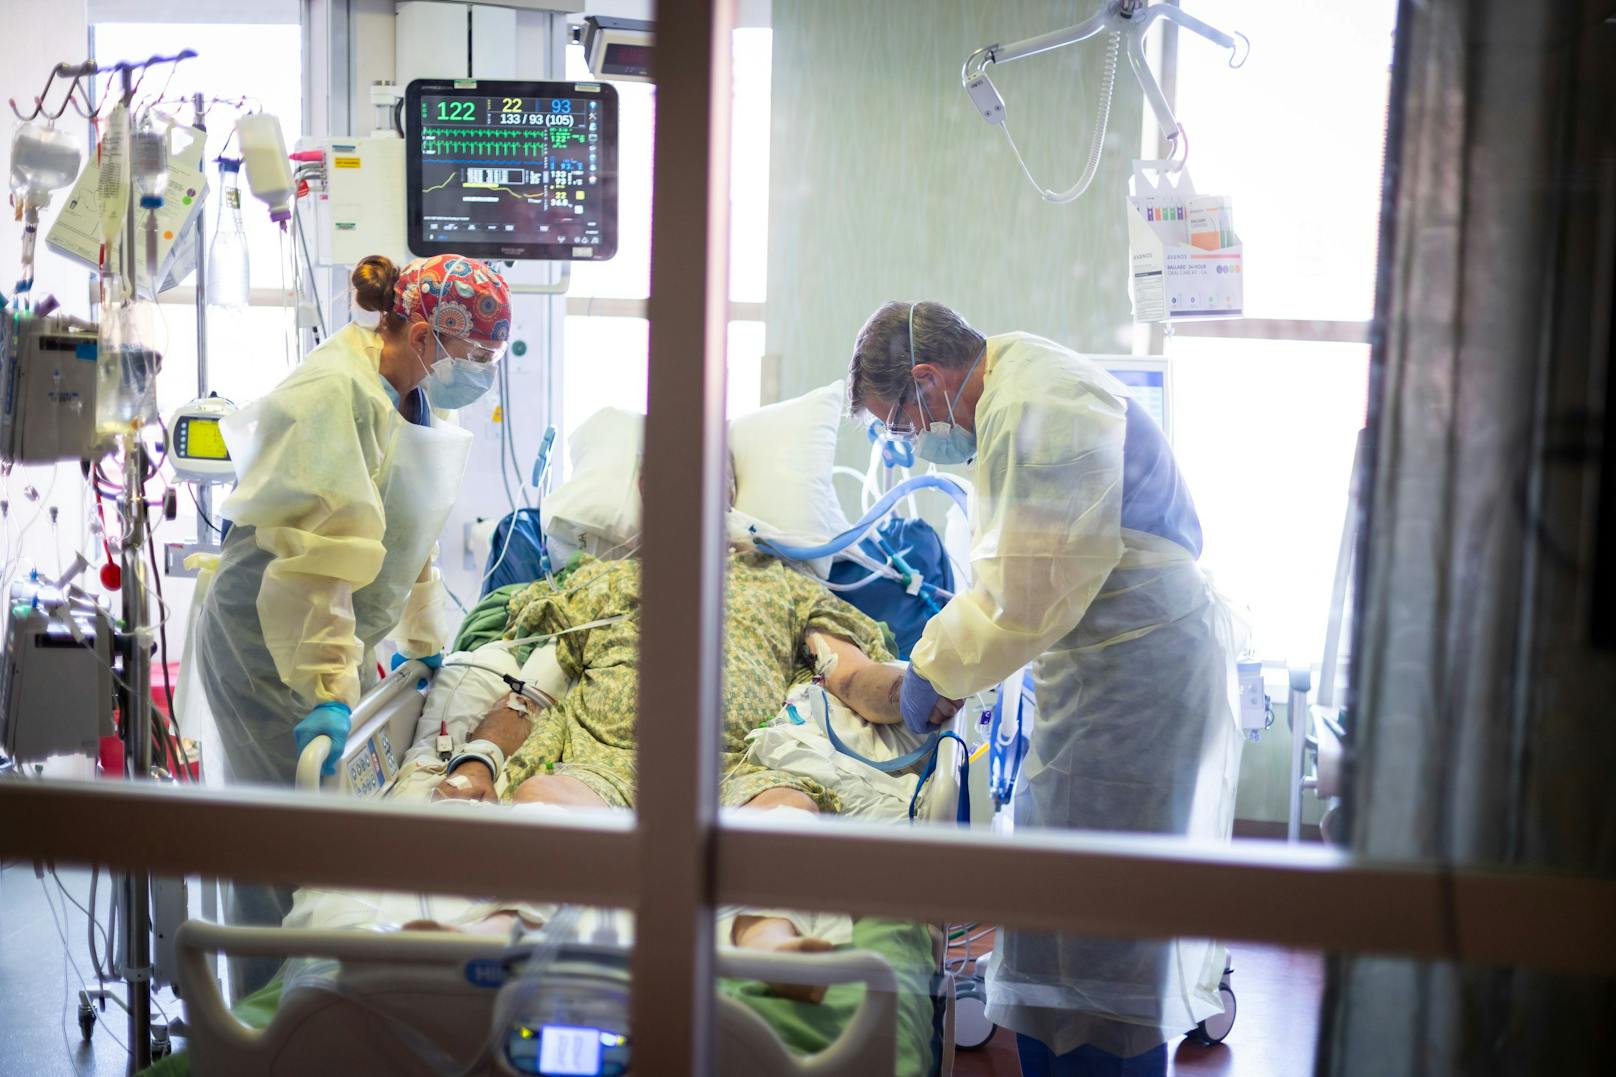 Ein Corona-Patient wird auf einer Intensivstation behandelt. Die Situation an den Spitälern wird immer kritischer.